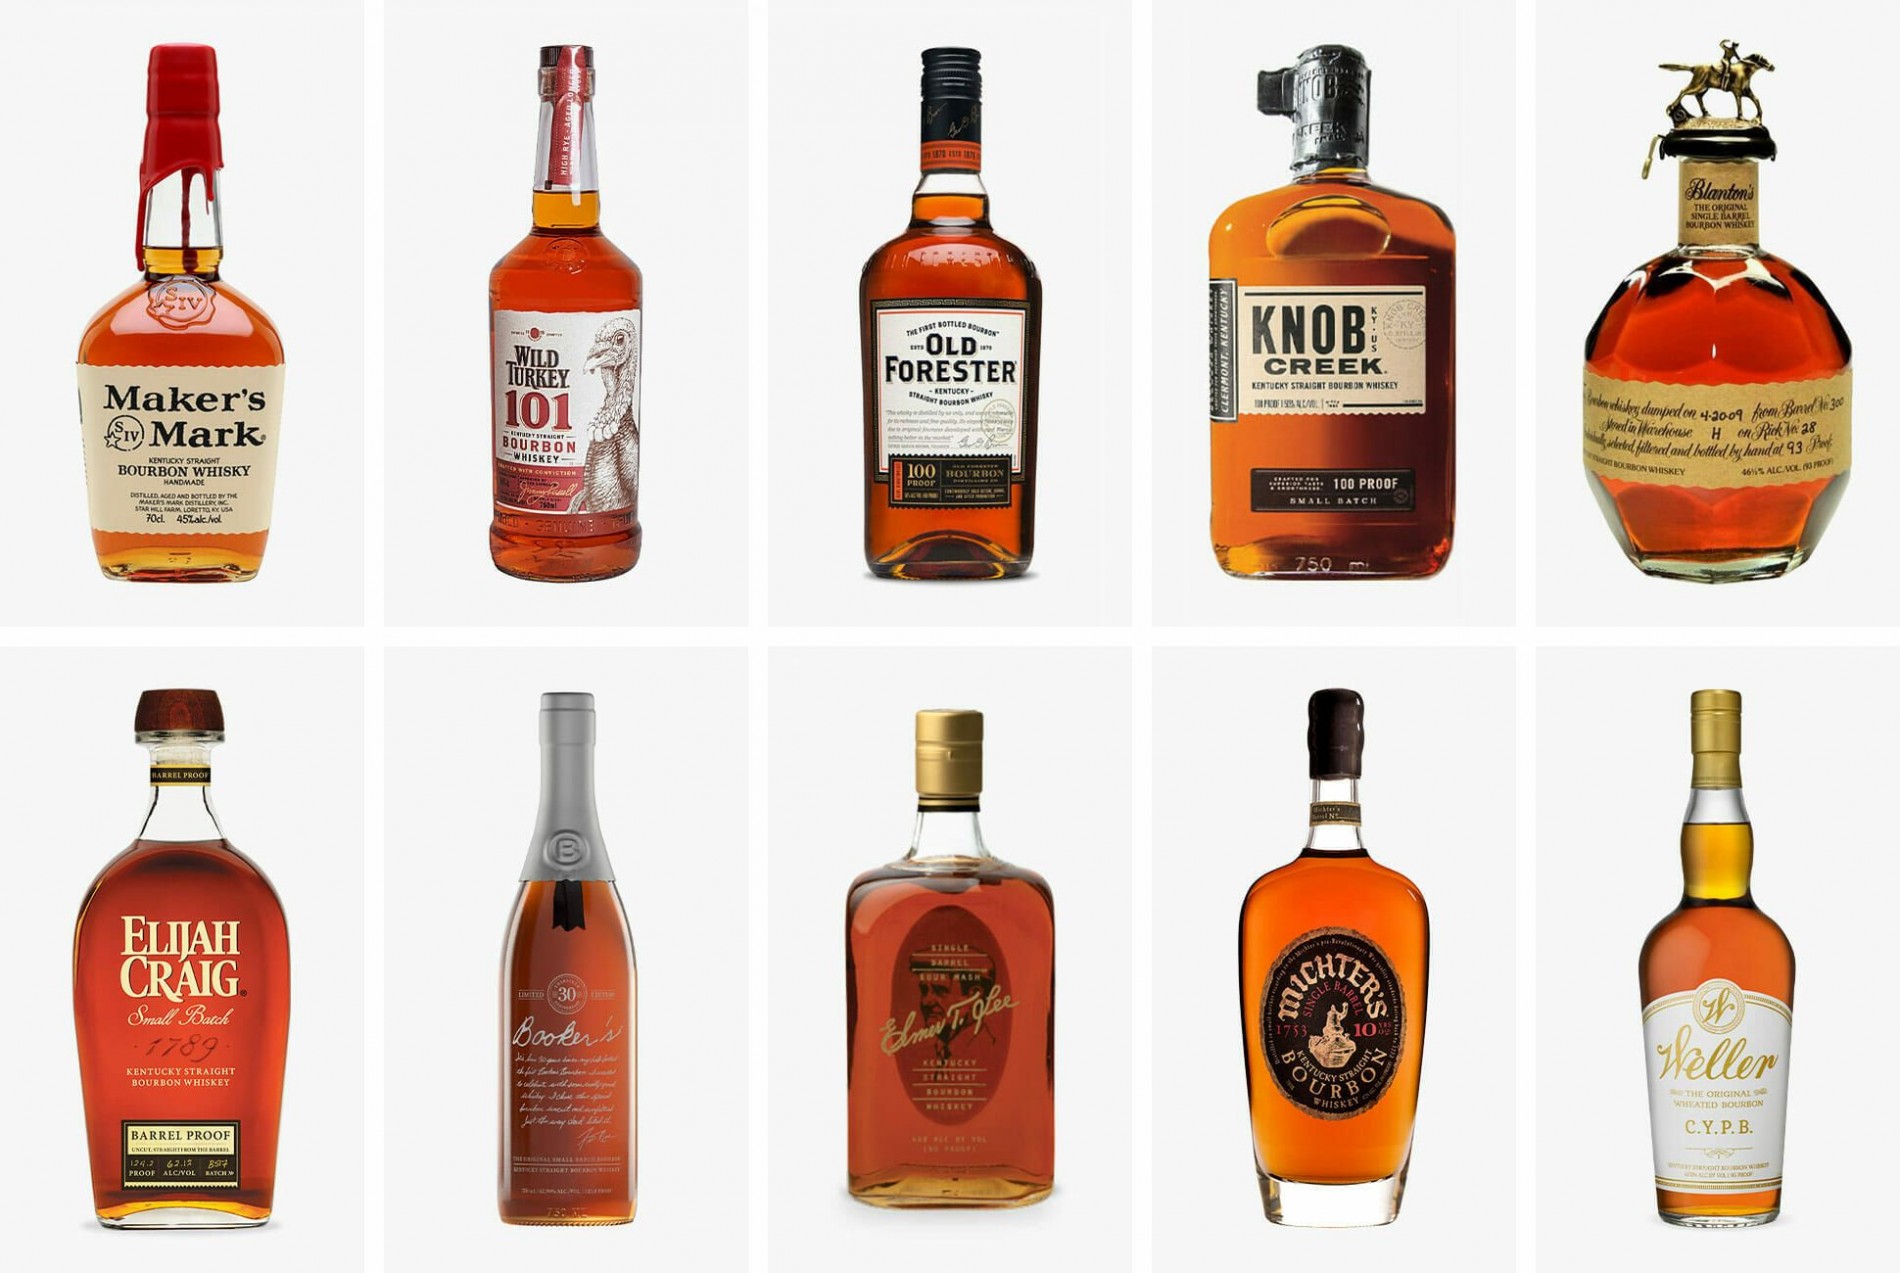 Bourbon là gì